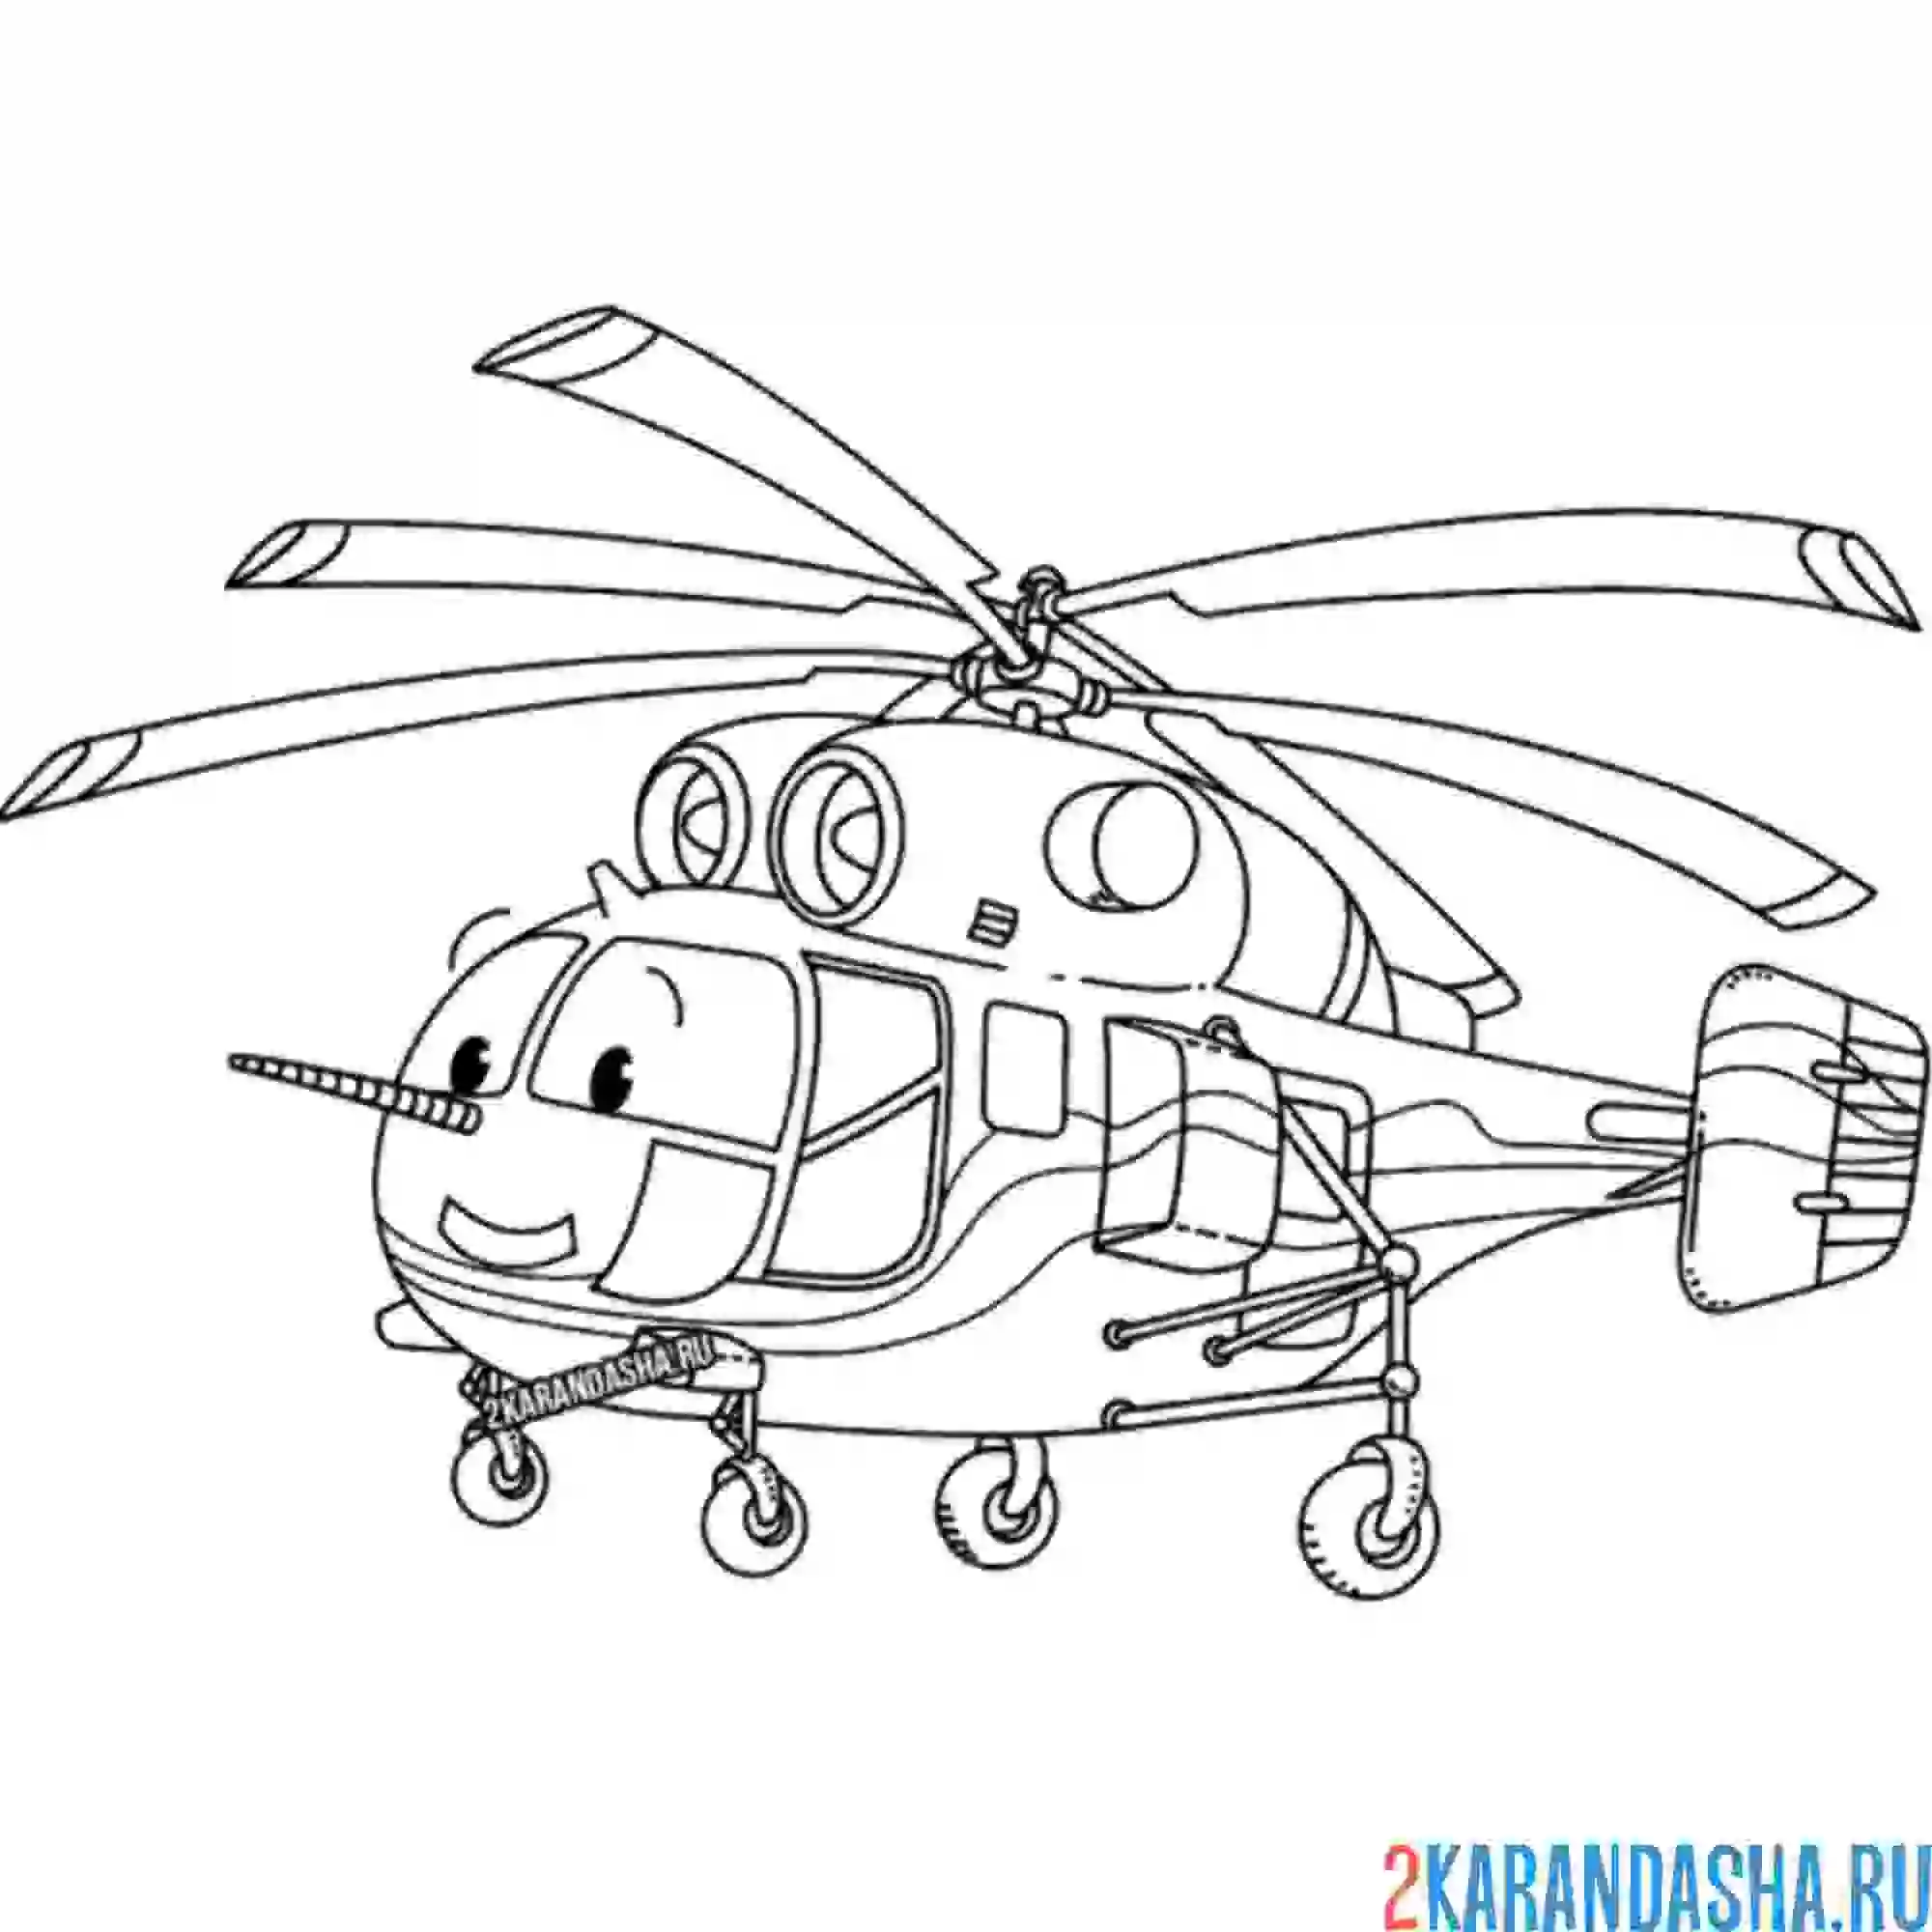 Раскраска вертолет военный детский